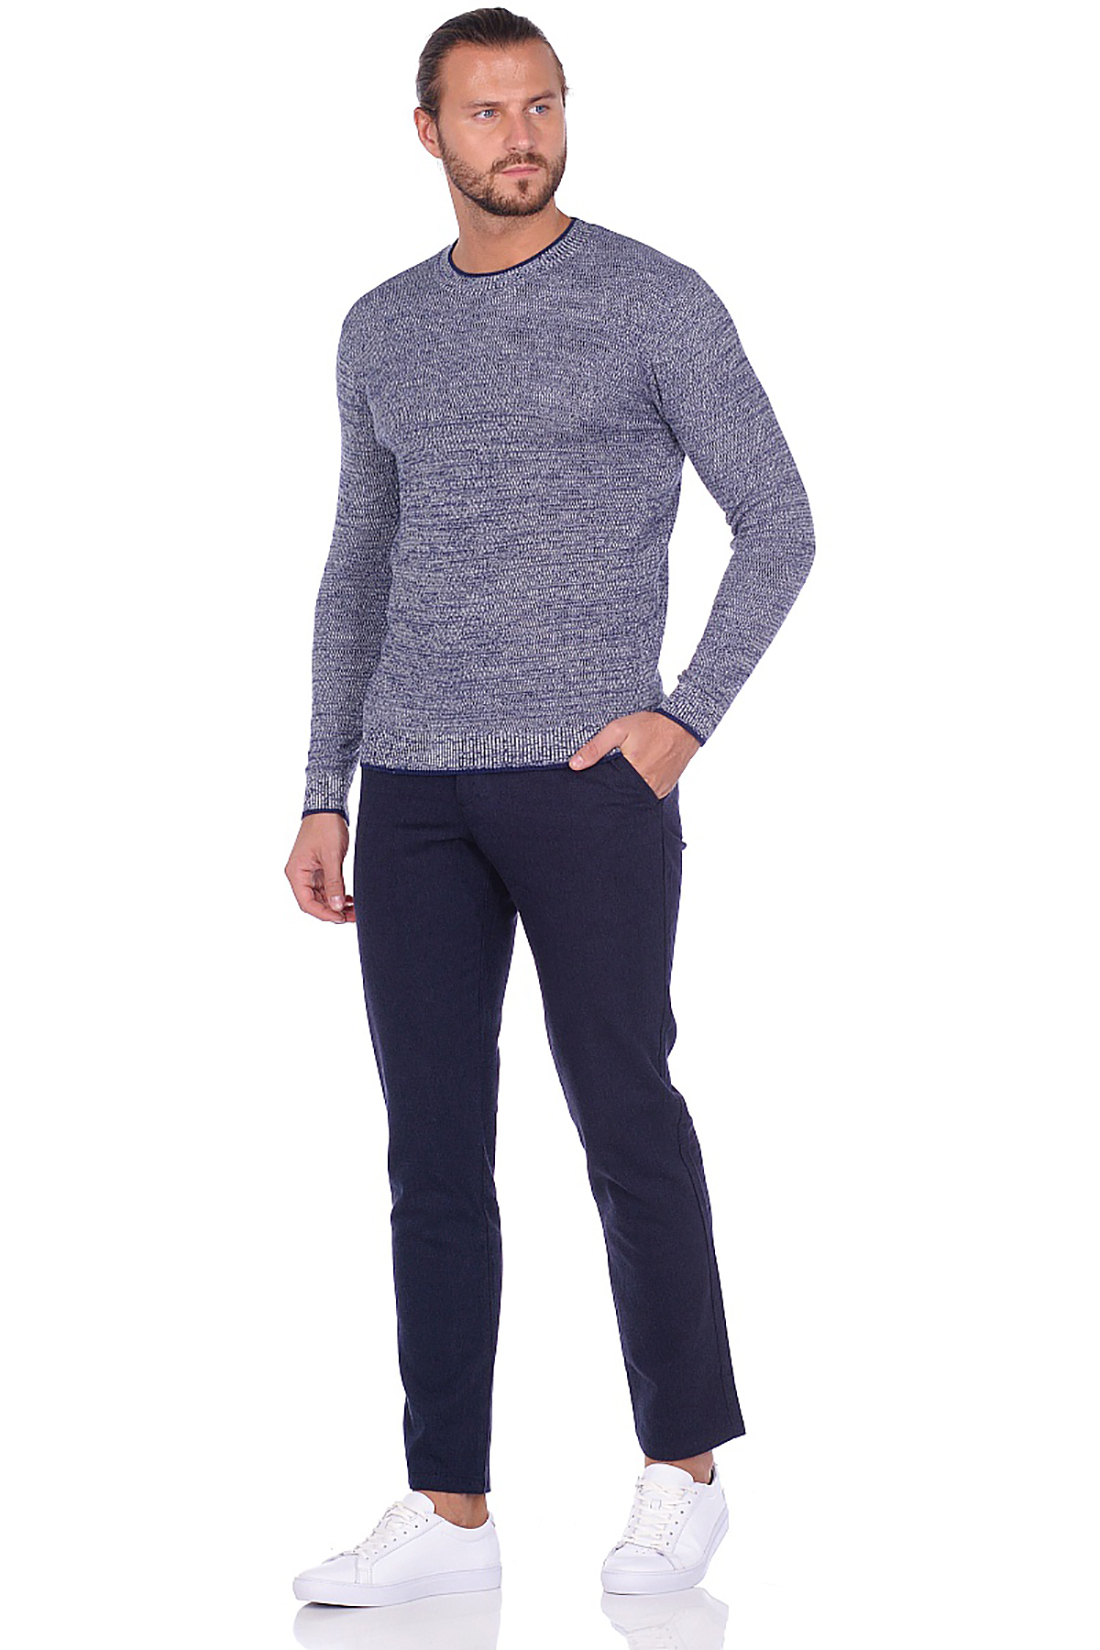 Классические брюки из меланжевого материала (арт. baon B799508), размер XL, цвет синий Классические брюки из меланжевого материала (арт. baon B799508) - фото 2